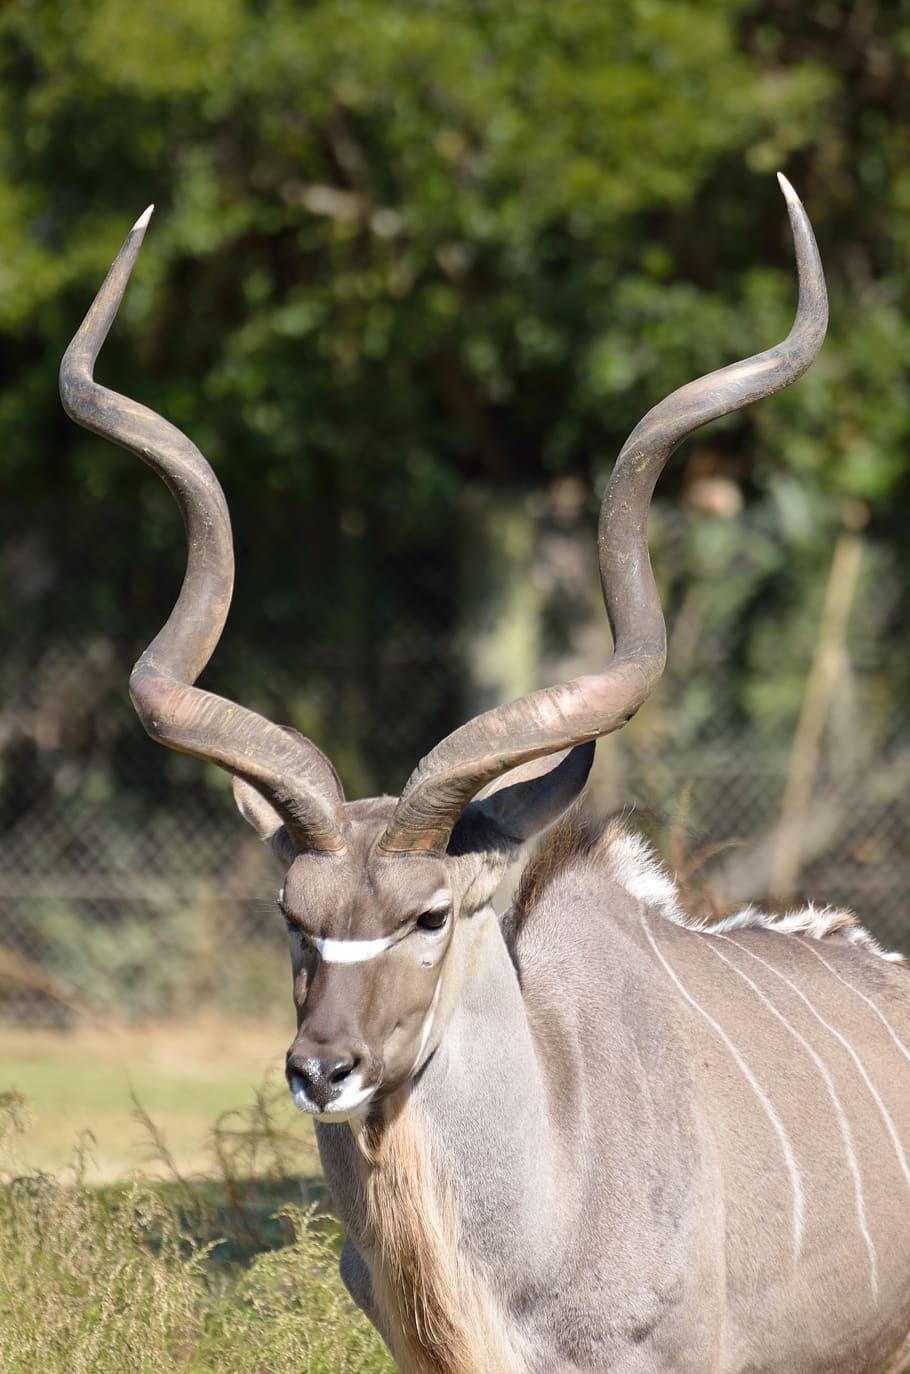 greater kudu, animal, zoo, wildlife, nature, africa, tragelaphus